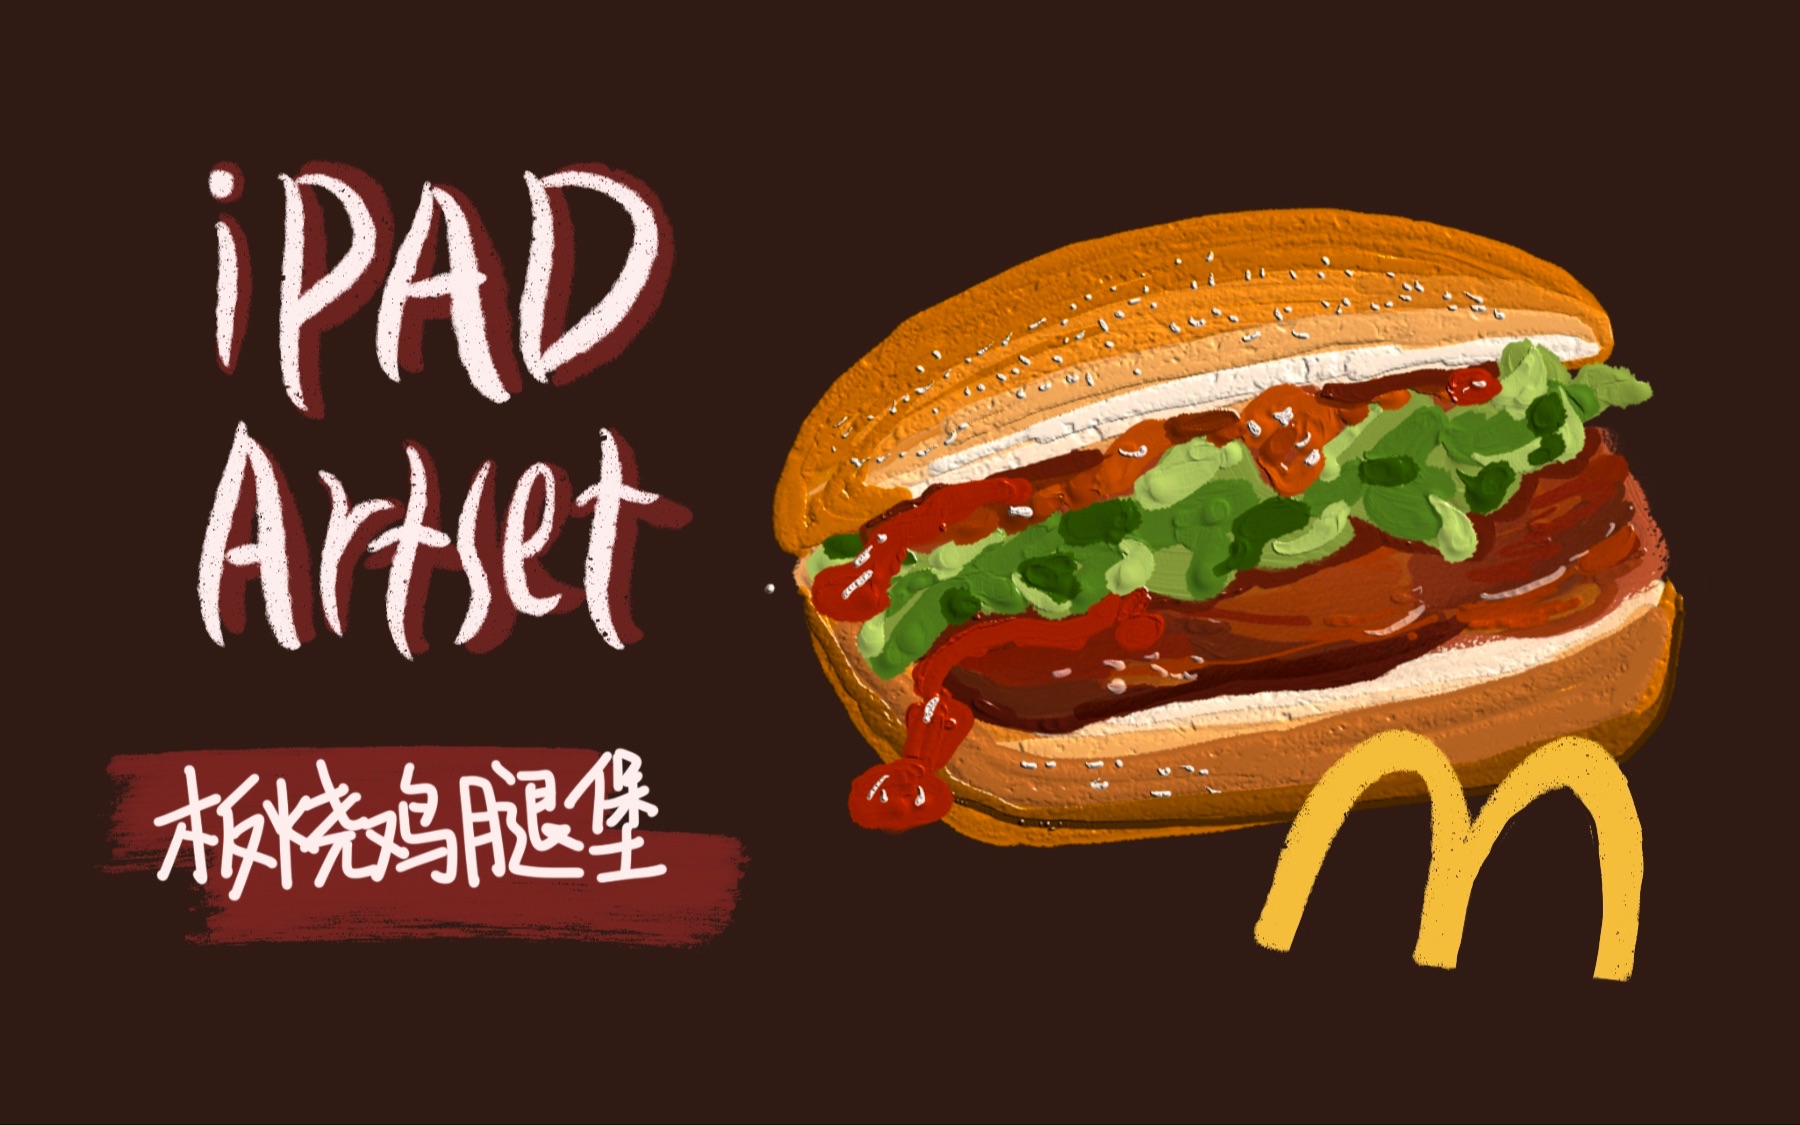 【ipad】artset4 麦当劳板烧鸡腿堡教程~【ipad画画】【artset4】草莓